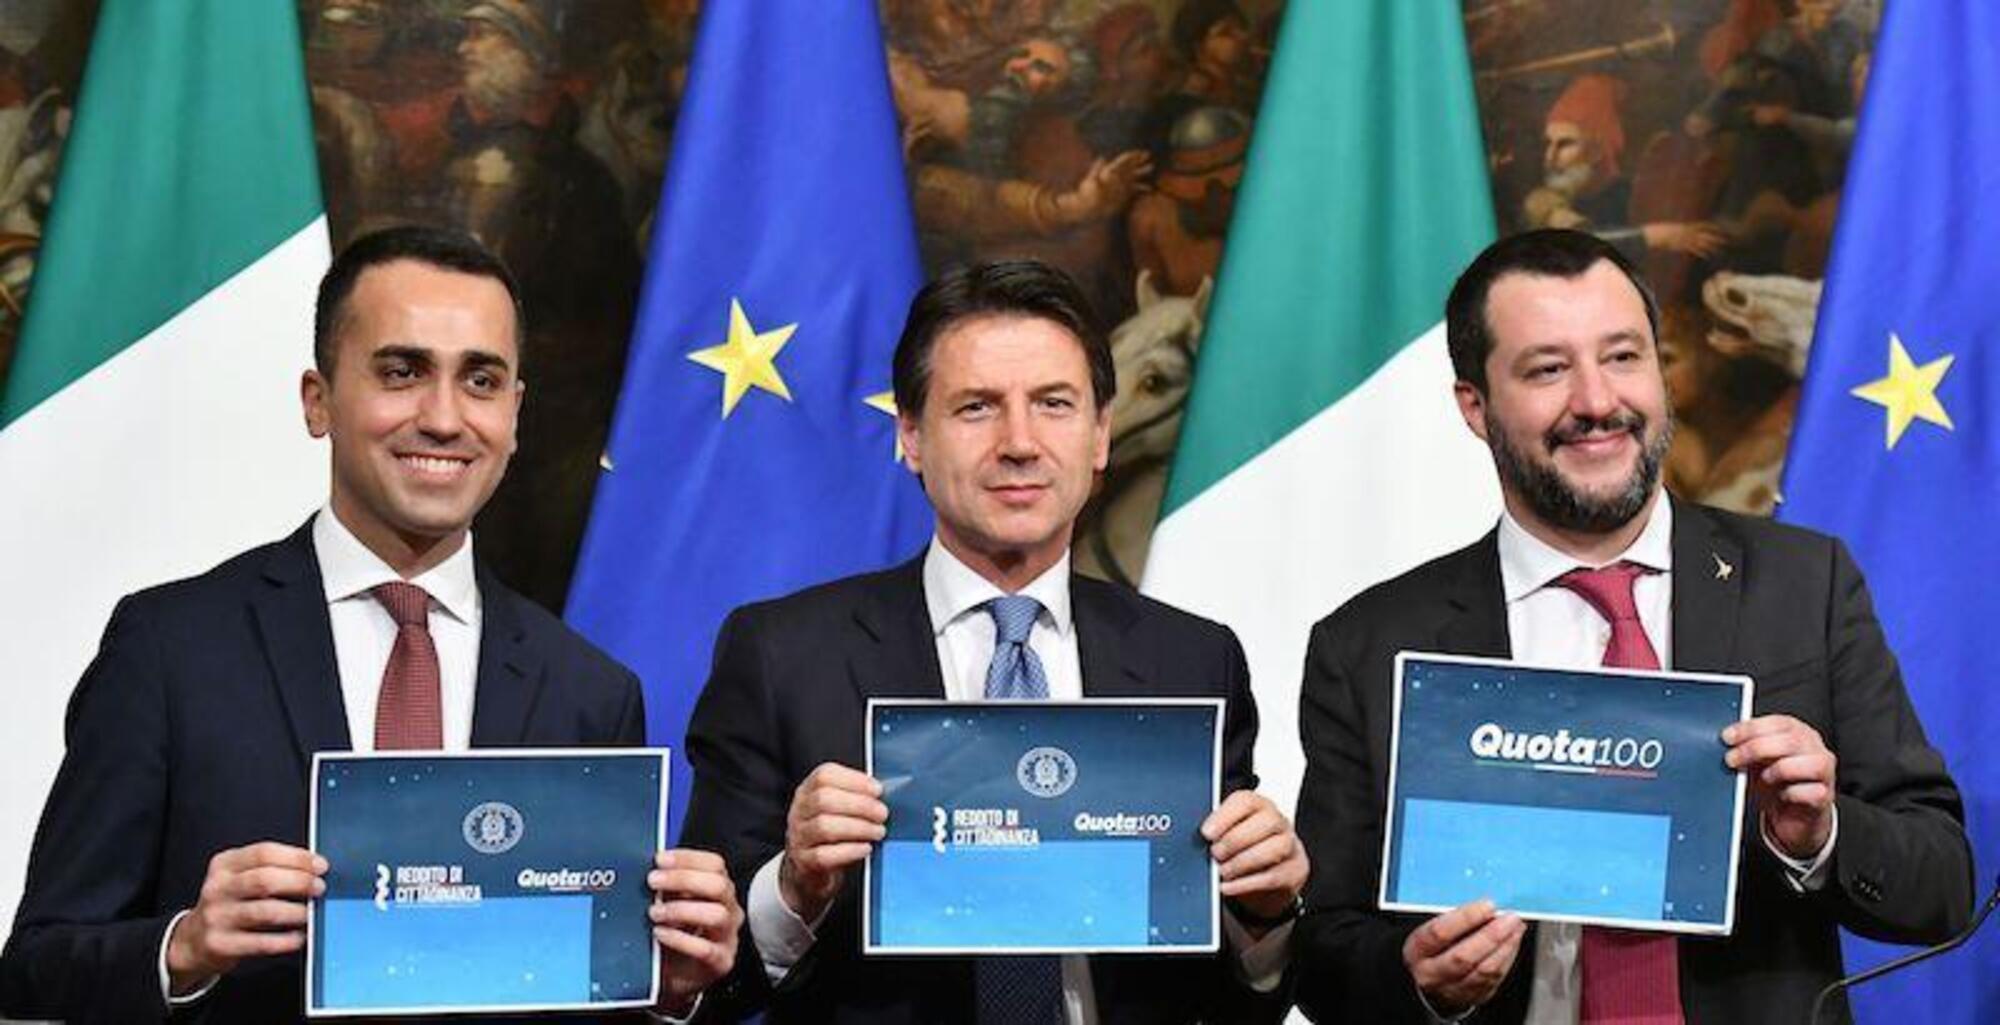 20220913 120559044 7510Matteo Salvini tiene in mano un cartello degli obiettivi raggiunti dal governo giallo-verde, senza il reddito di cittadinanza